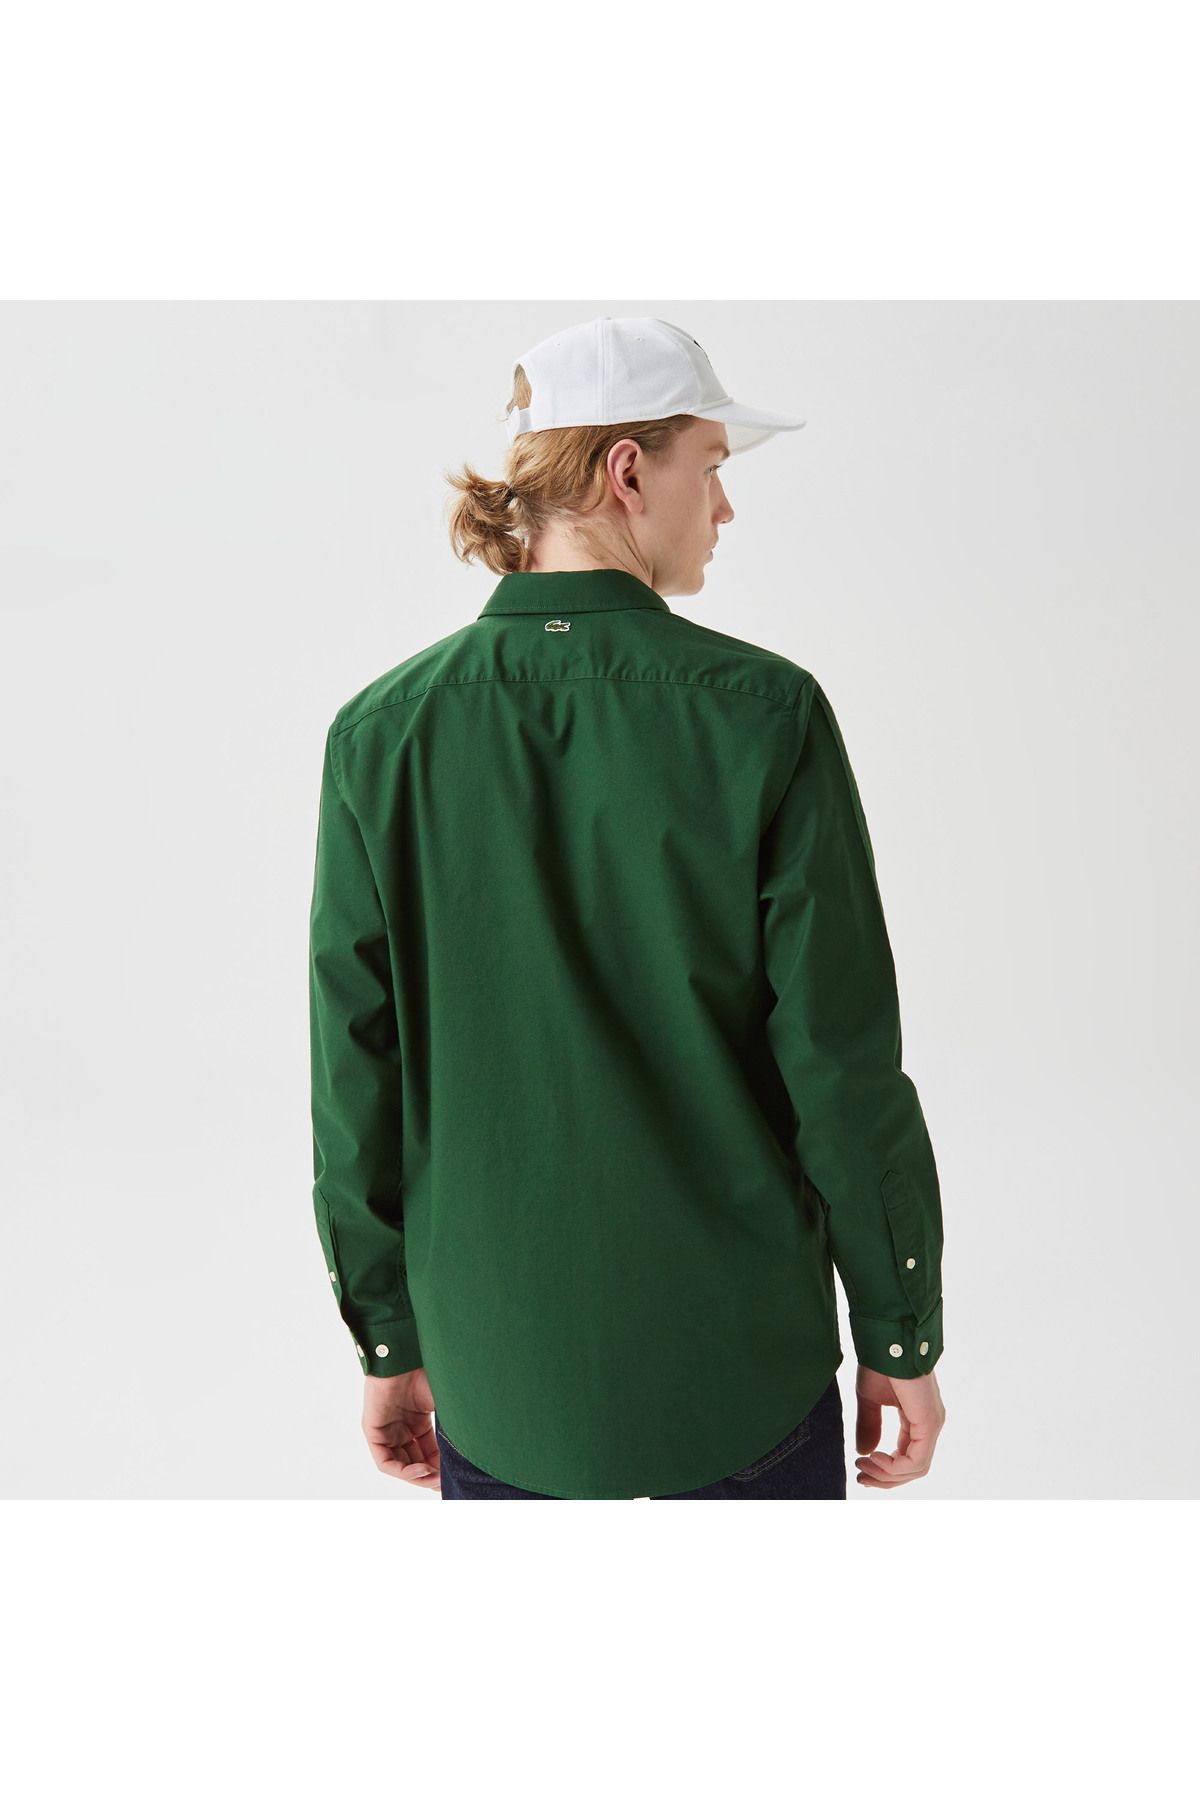 Lacoste پیراهن سبز یقه دار باریک مردانه